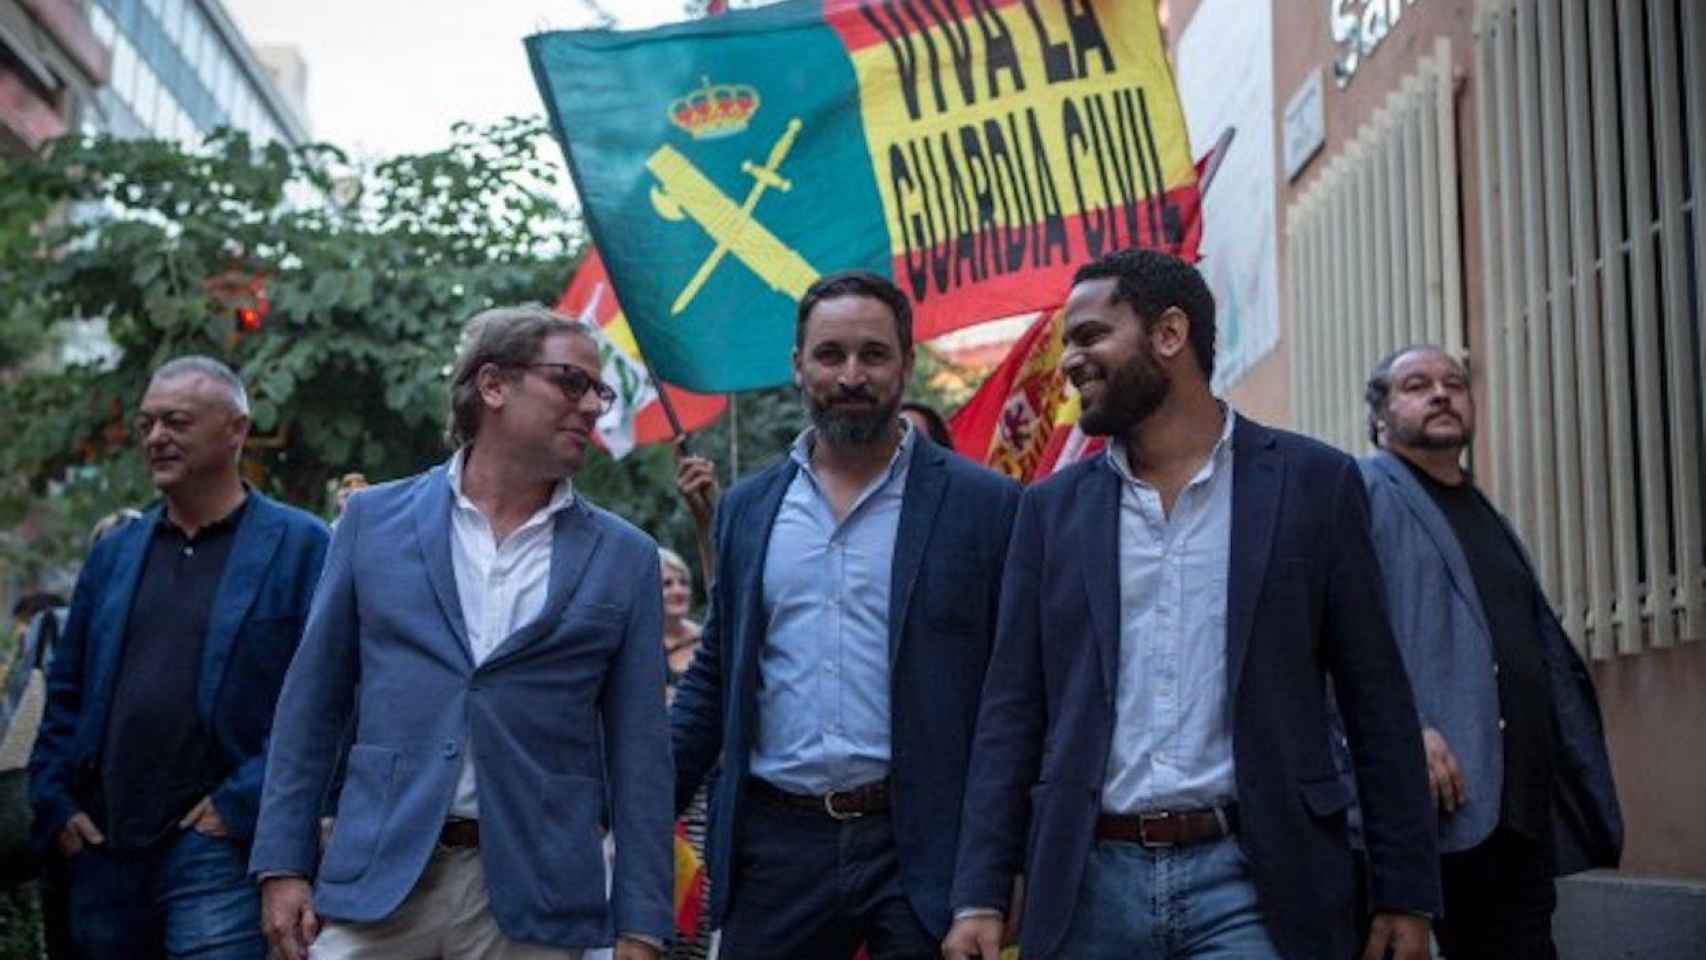 Santiago Abascal de VOX con Ignacio Garriga en Barcelona para defender a la Guardia Civil